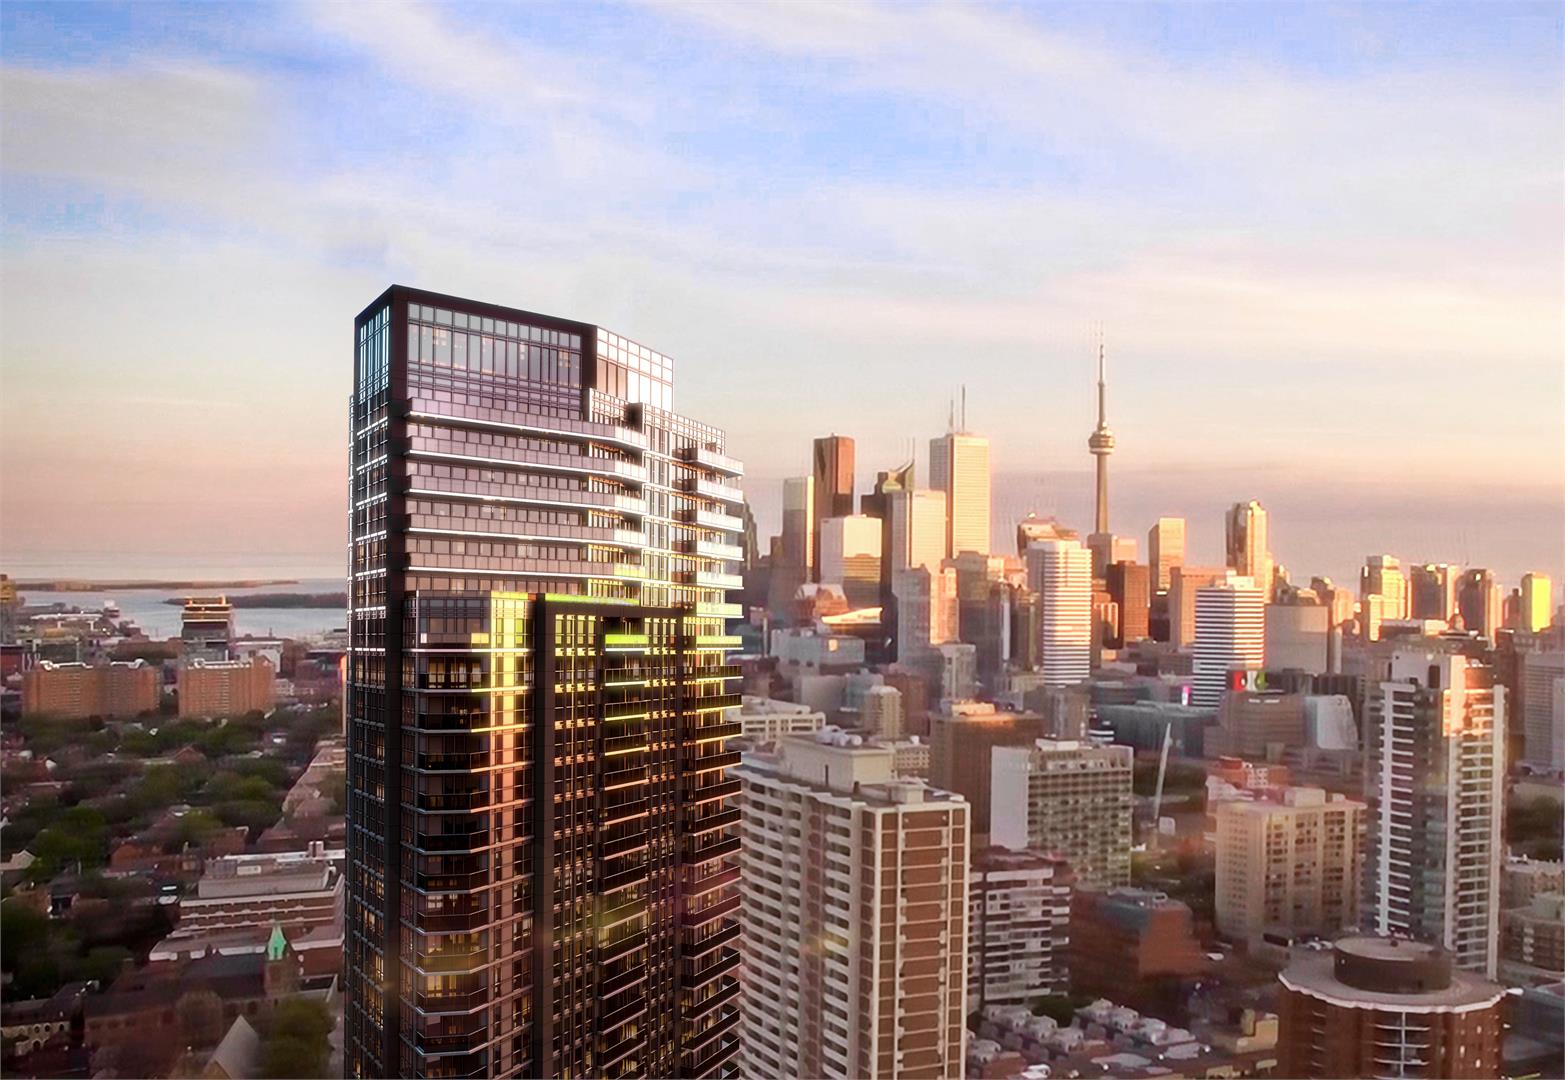 159SW Condos Building View Toronto, Canada